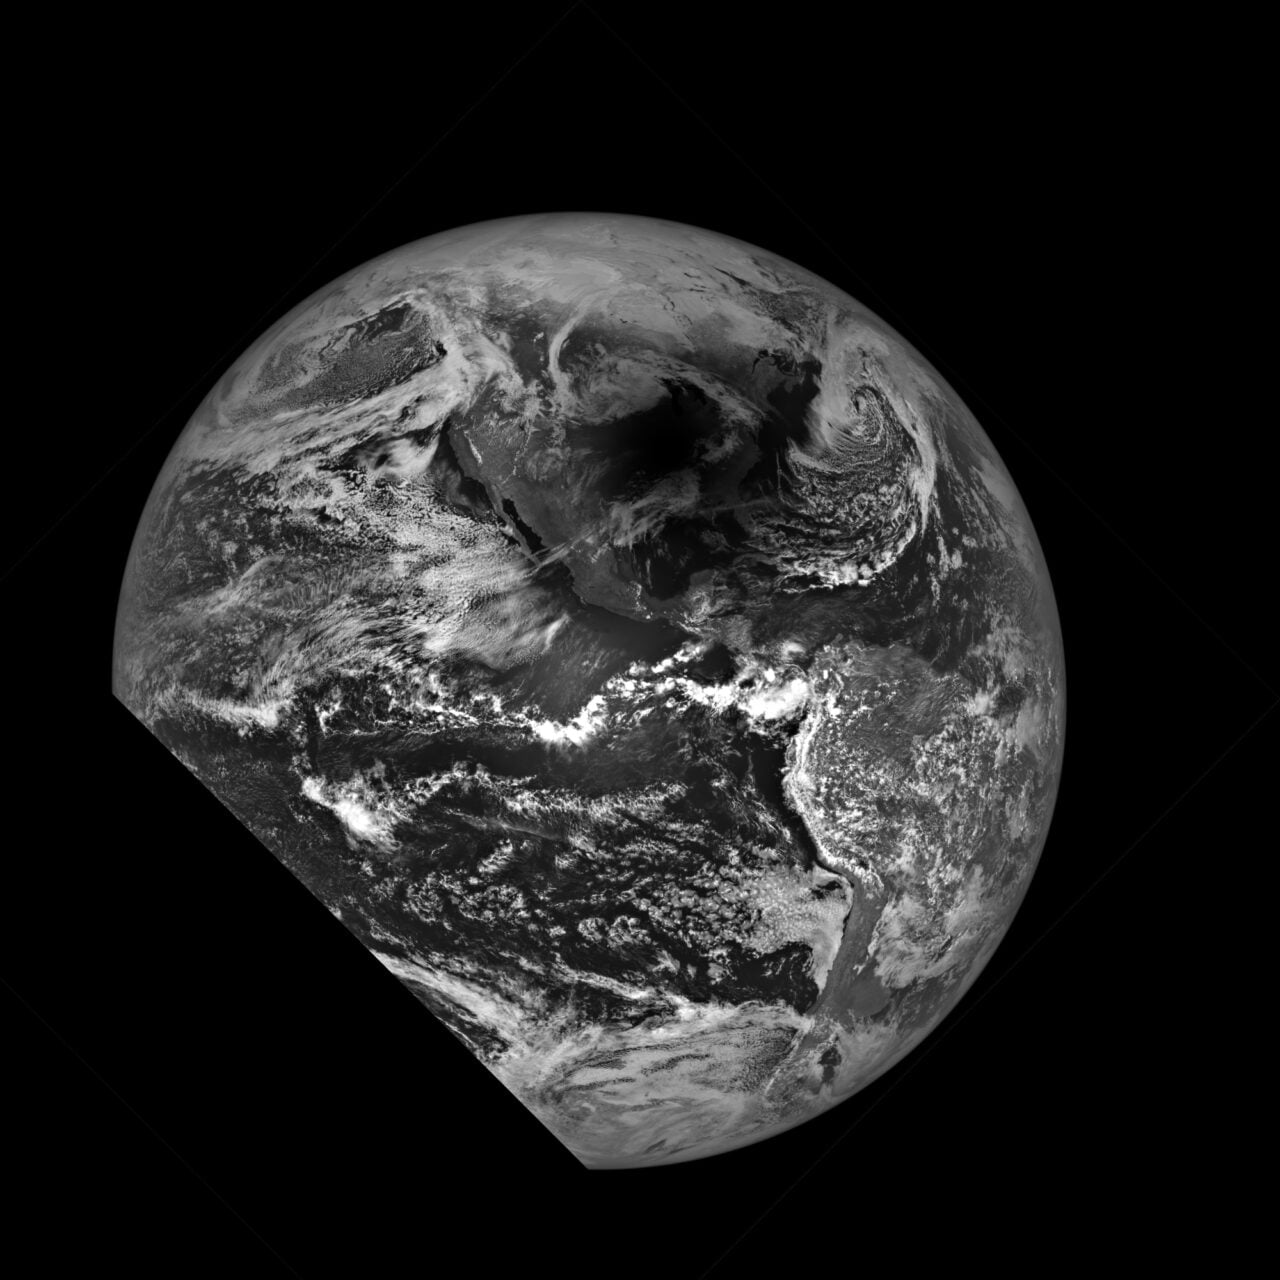 Zdjęcie satelitarne Ziemi przedstawiające zaćmienie Słońca wykonane przez NASA w czerni i bieli ukazujące fragment planety z widocznymi chmurami i kontynentami.